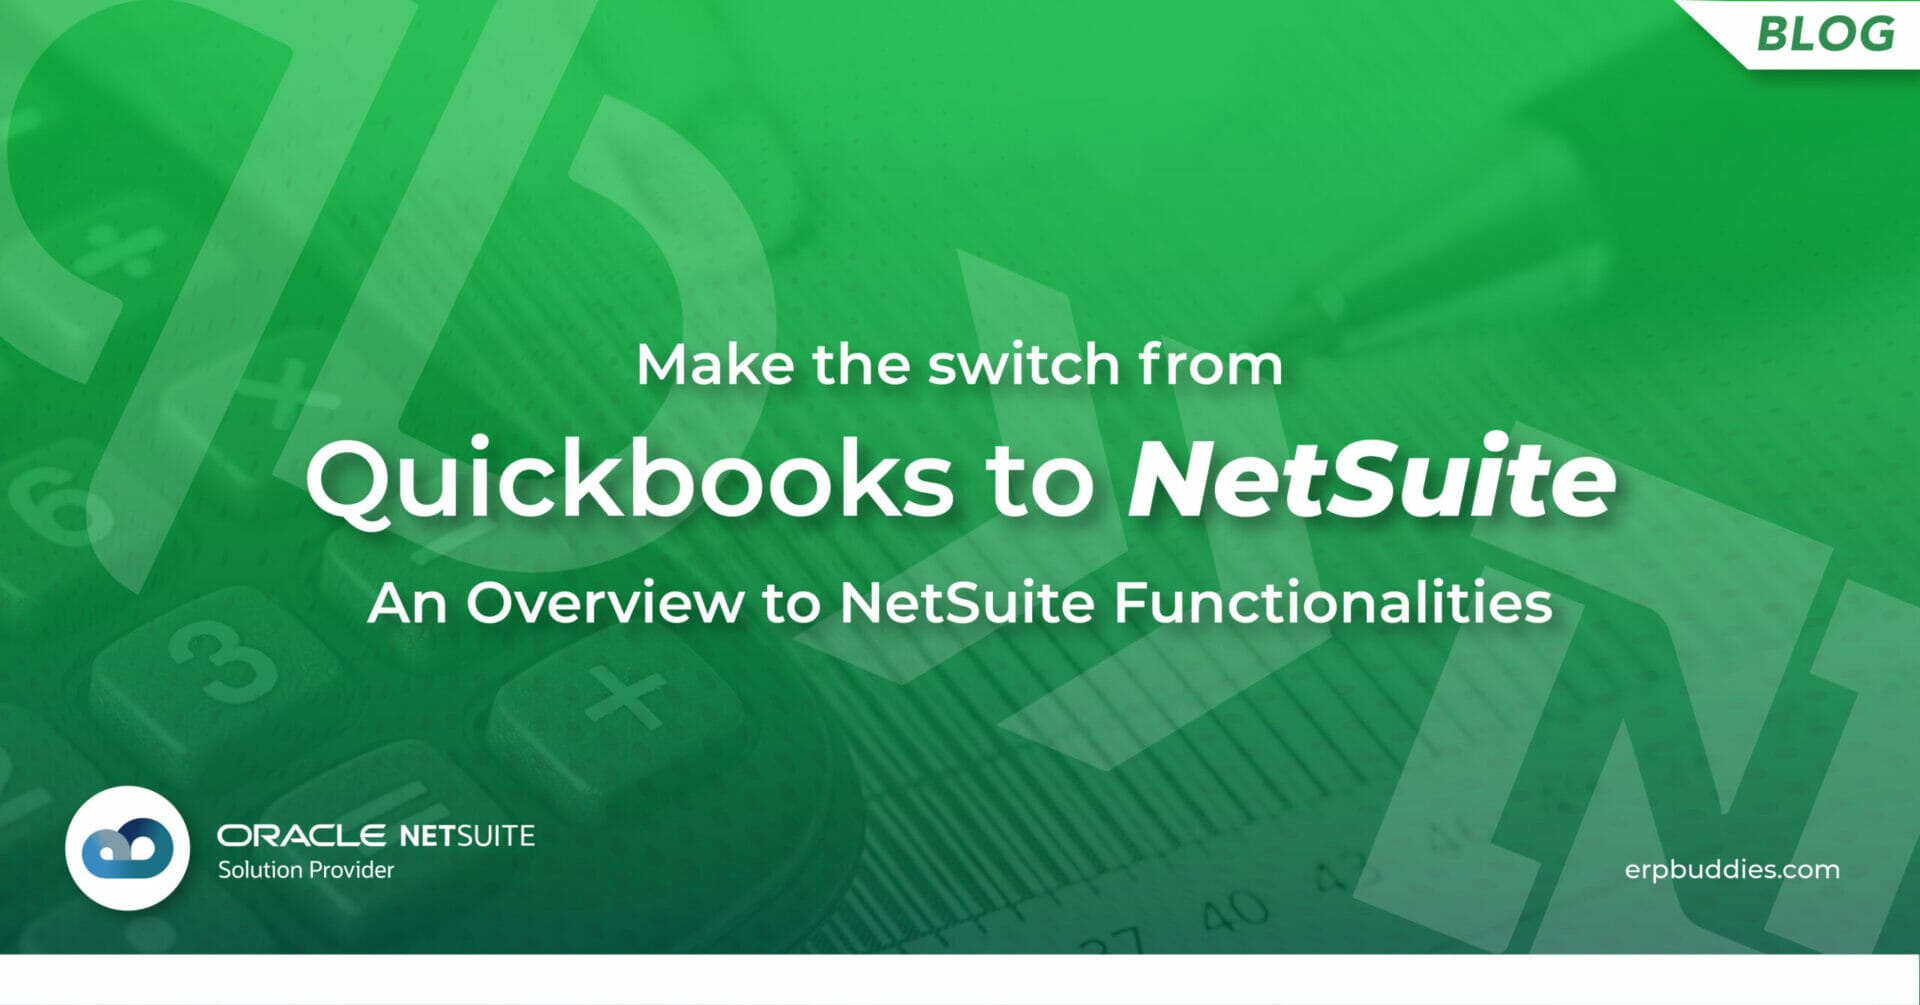 Quickbooks vs NetSuite